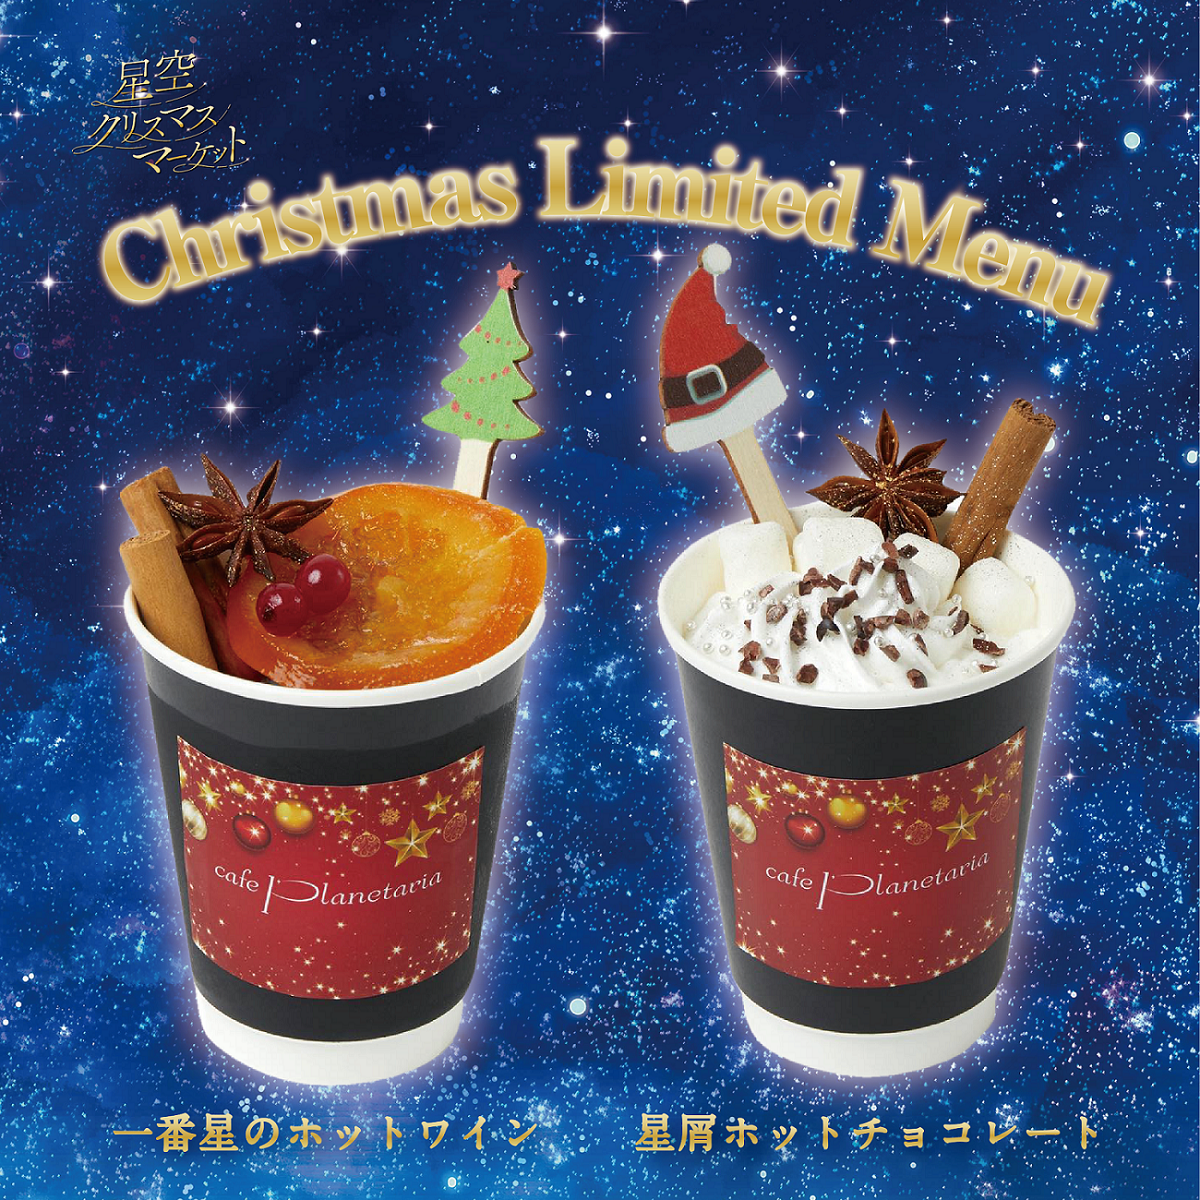 プラネタリウム内カフェ「Cafe Planetaria」各店にて
クリスマス限定ドリンクが登場！